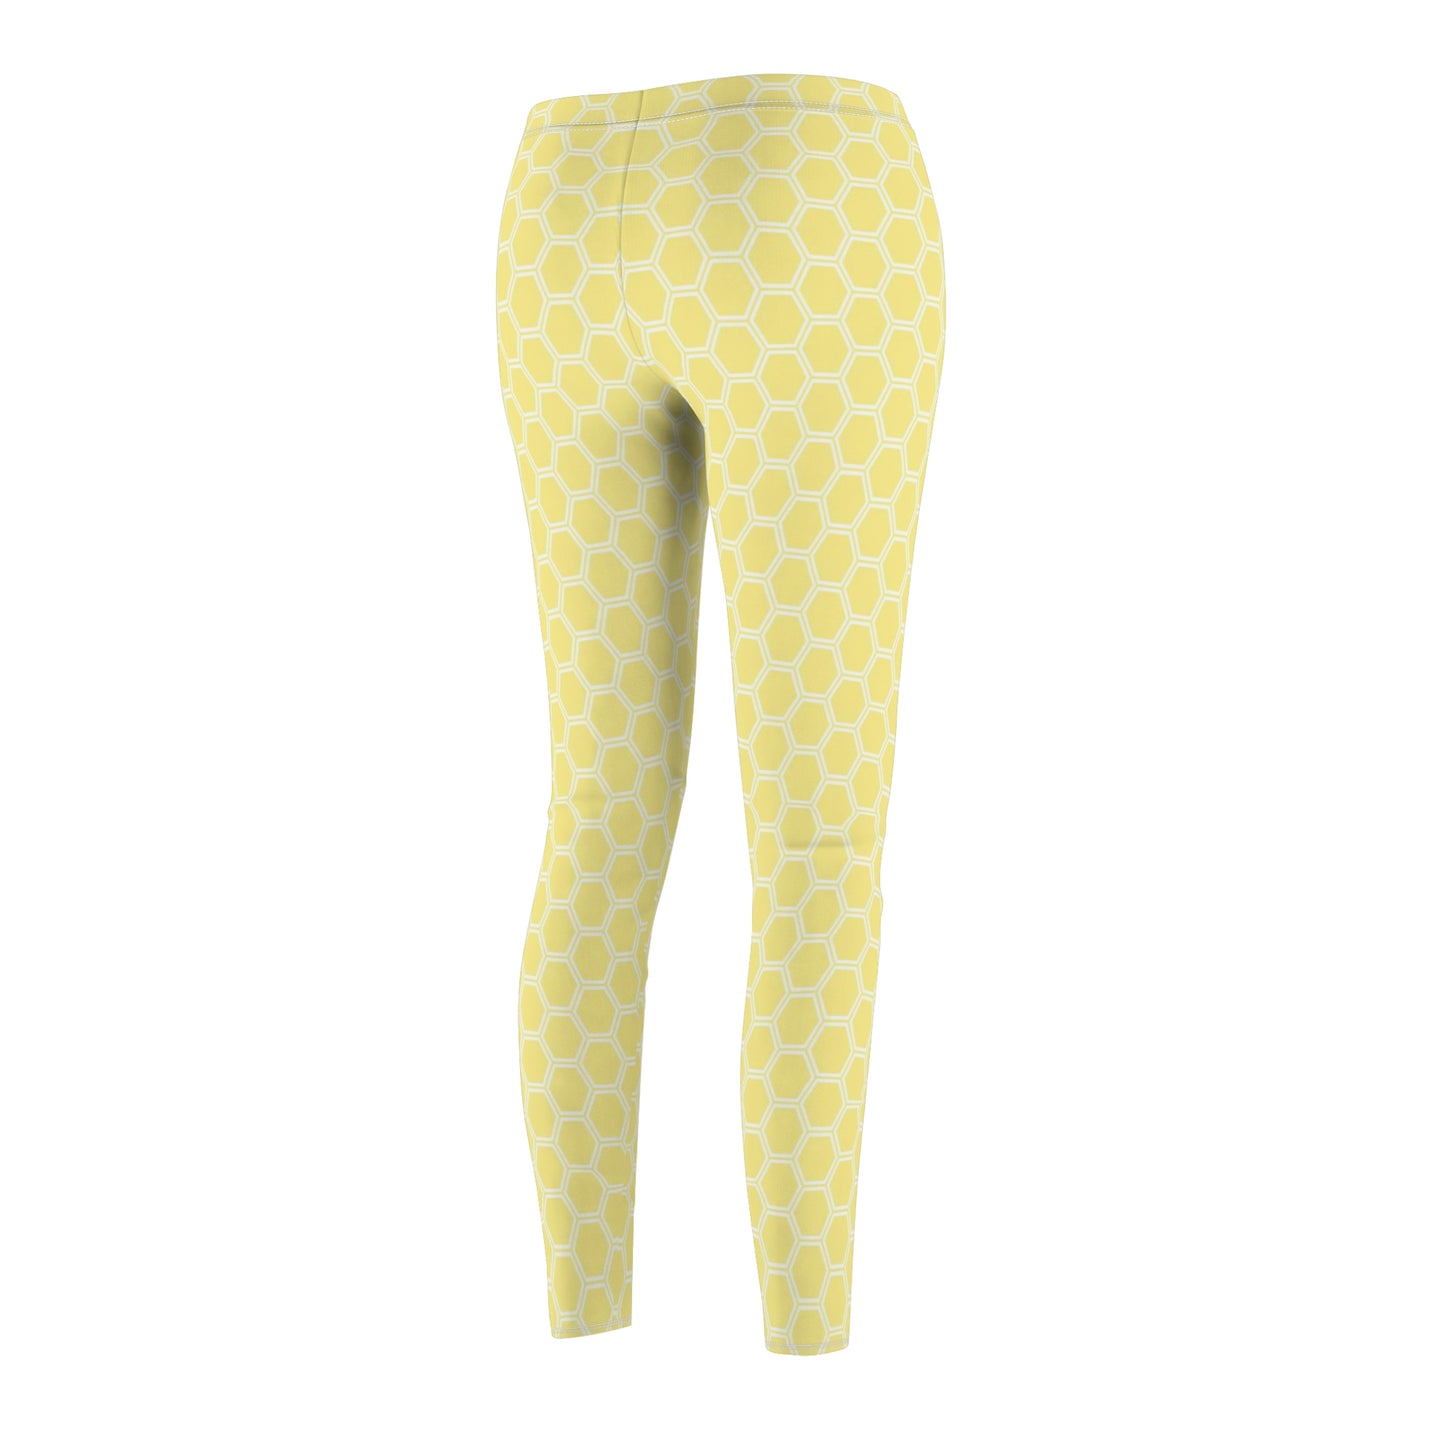 Women's Leggings Yellow Casual Workout Gym Leggins, Sportswear Plus Size